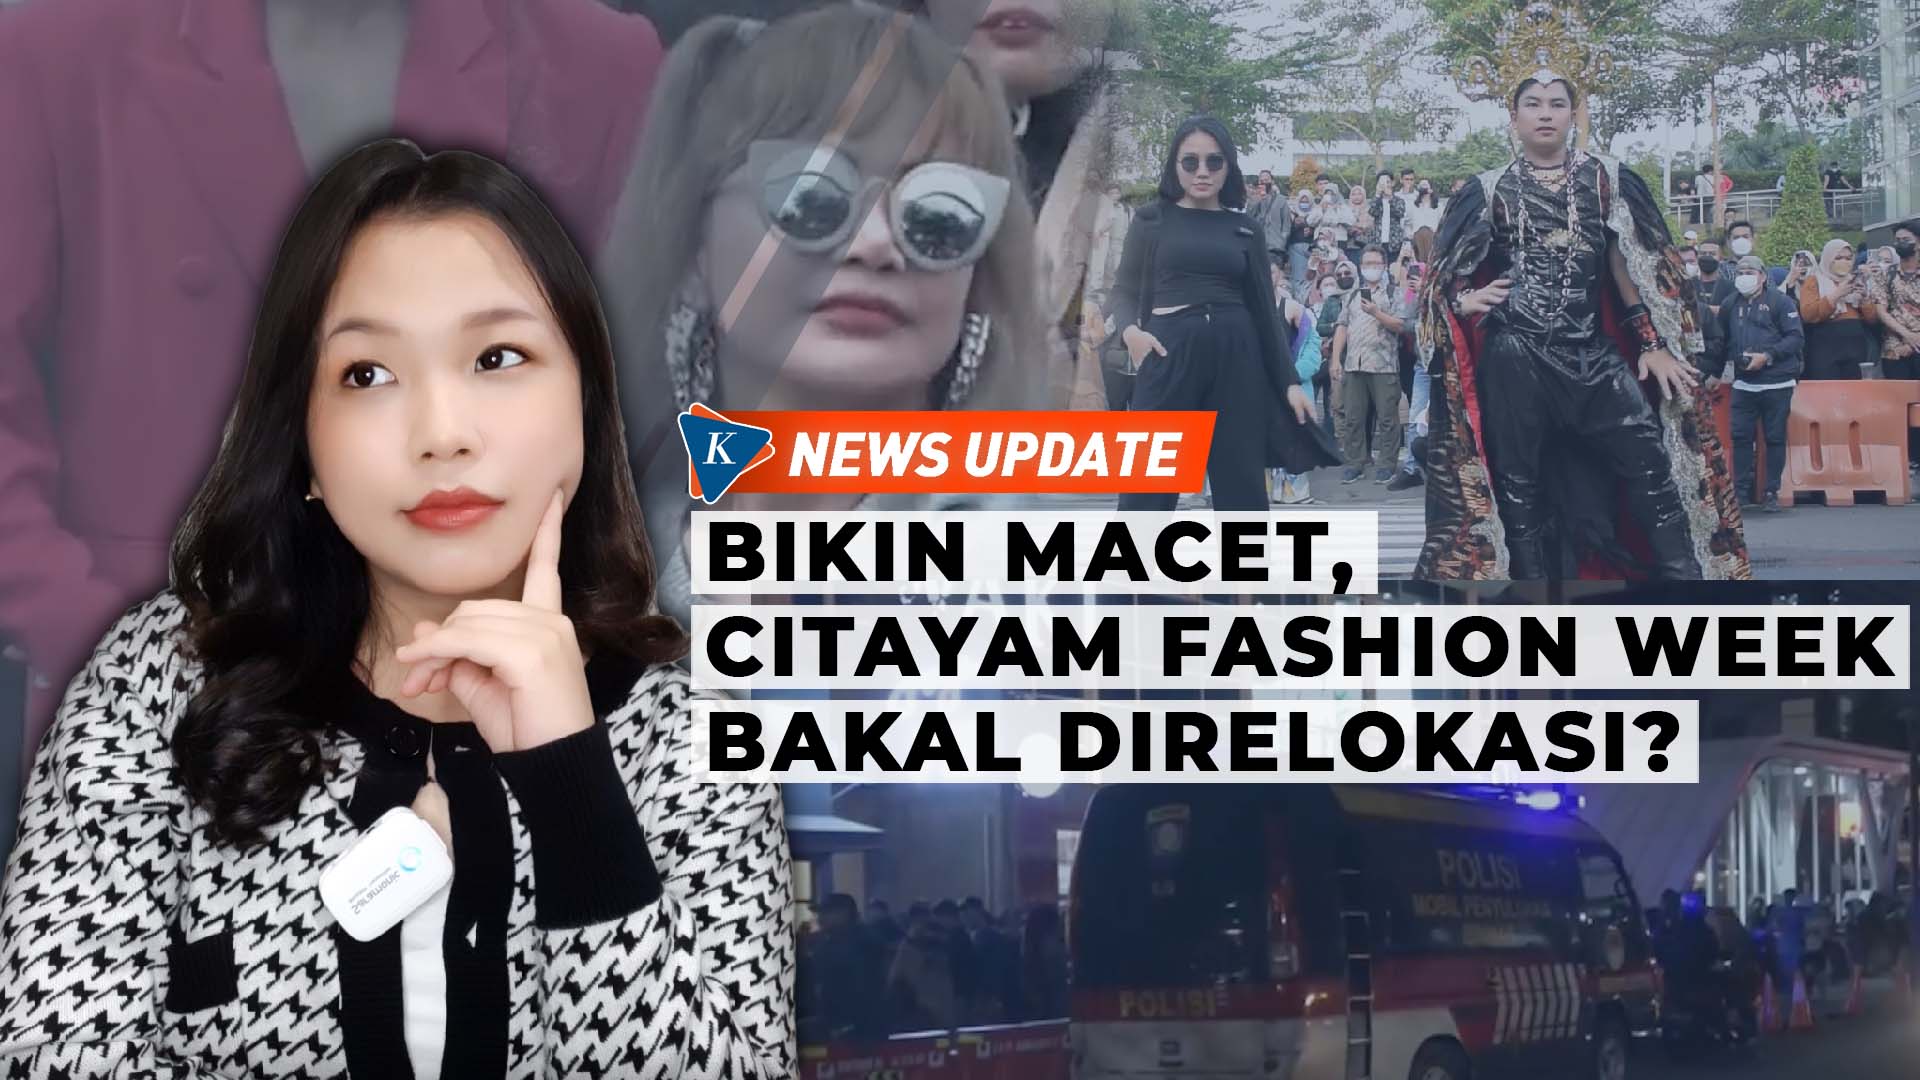 Citayam Fashion Week Diblokade dan Akan Direlokasi untuk Cegah Kemacetan